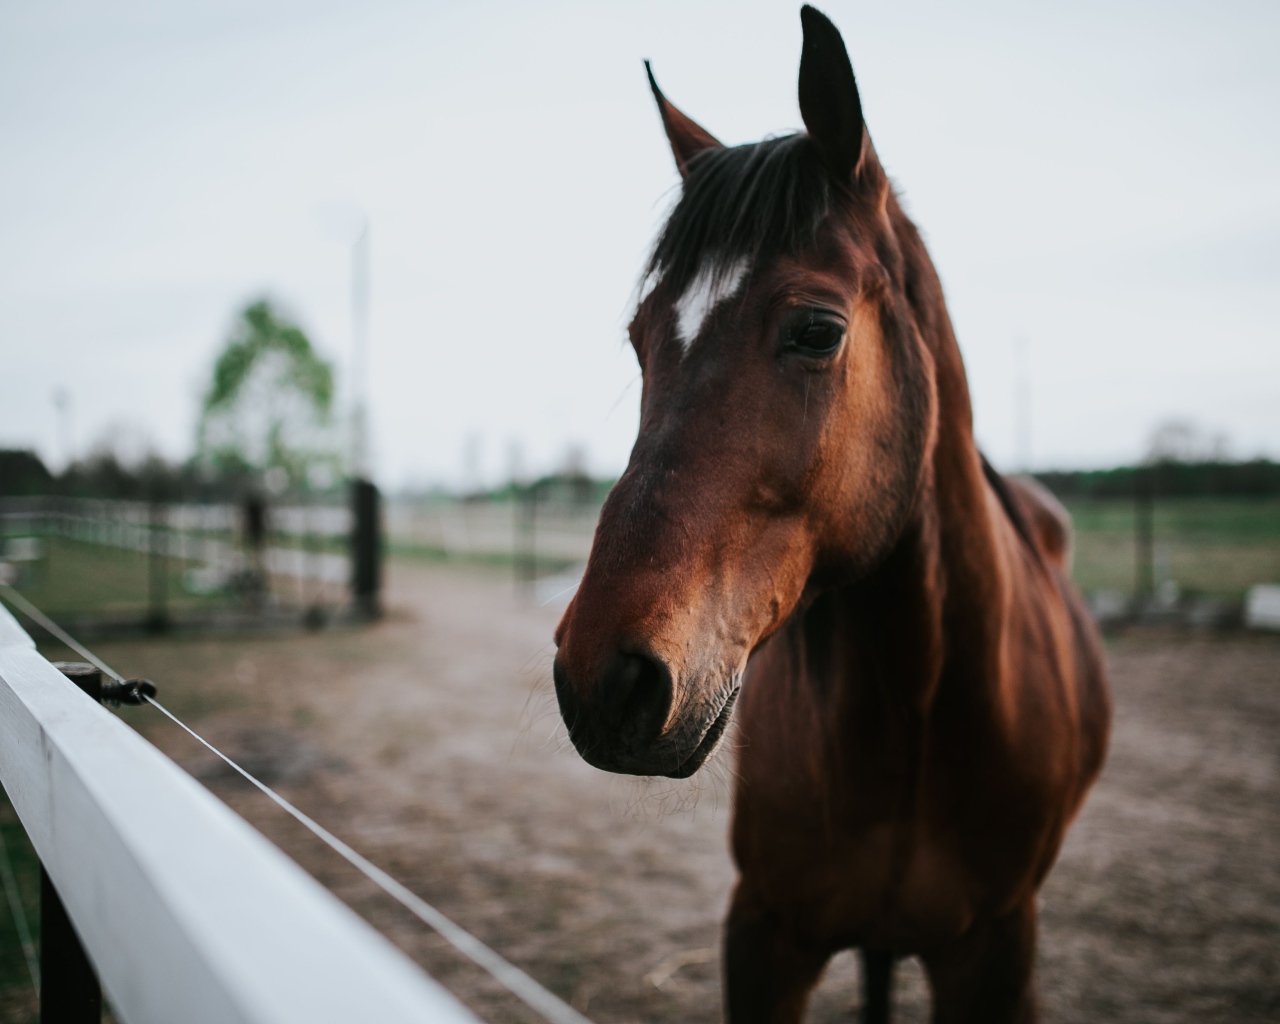 Красивый коричневый конь на ферме крупным планом